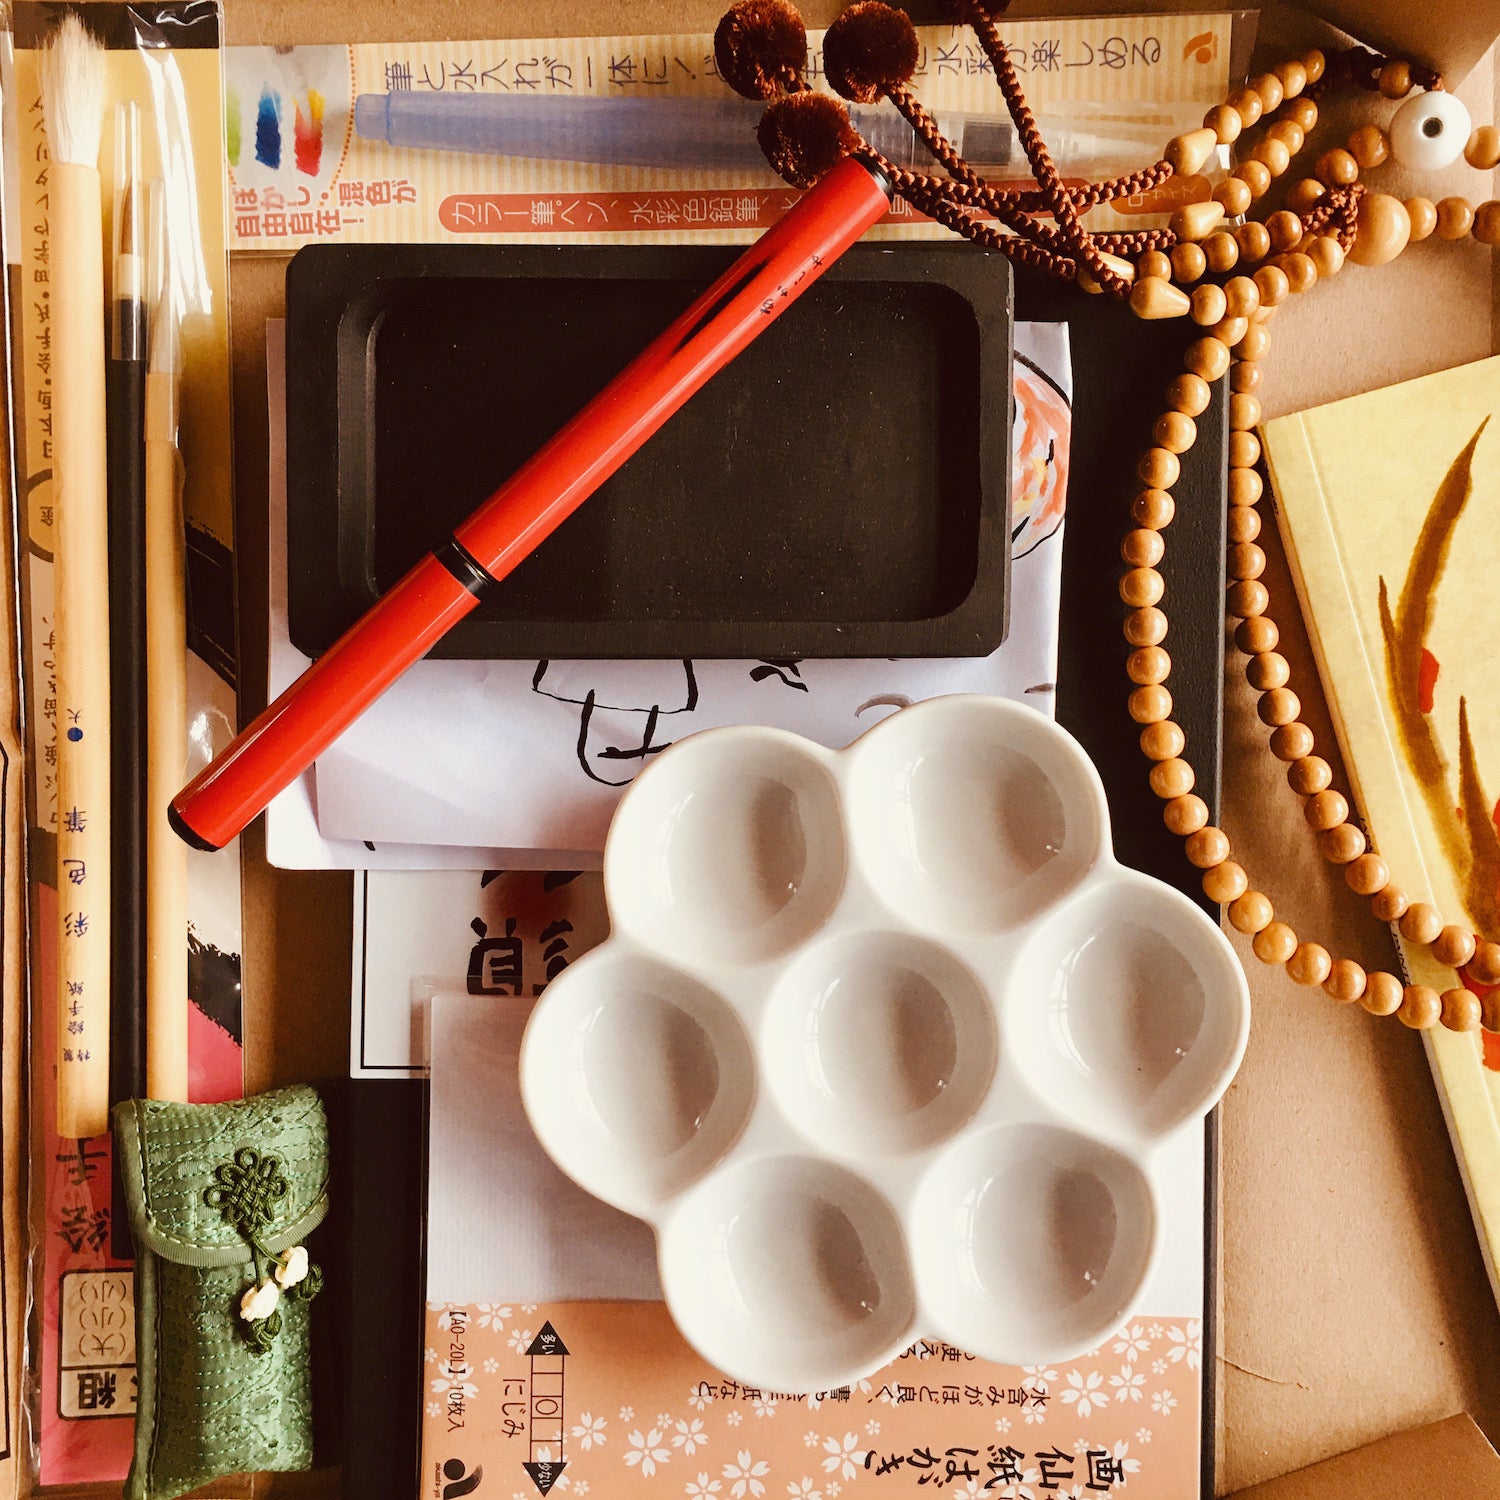 Introducing Akashiya Art Supplies Japan - NOMADO Store